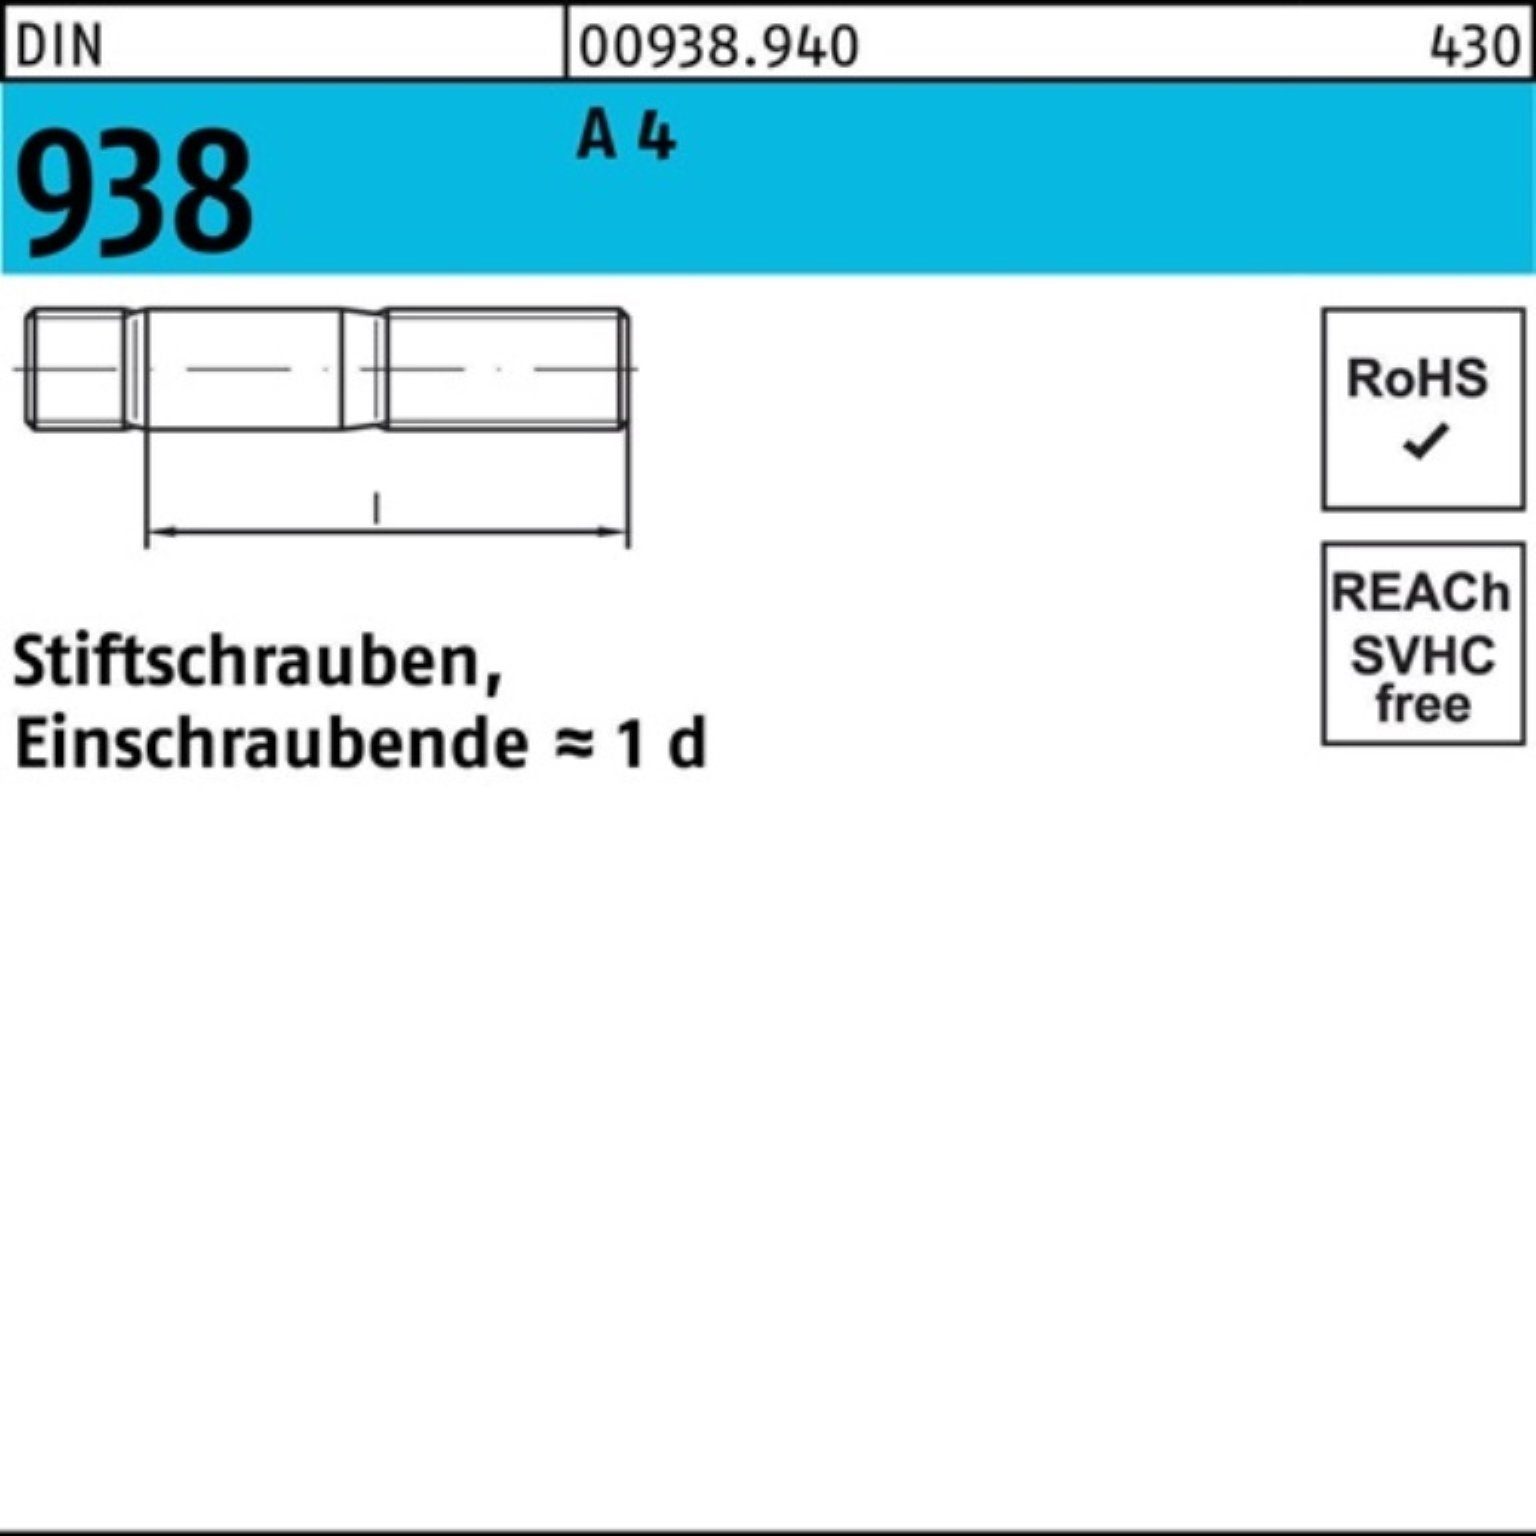 45 Stiftschraube DIN DIN Stif Stiftschraube Reyher 4 A 100er 938 A 4 Pack M24x Stück 1 938